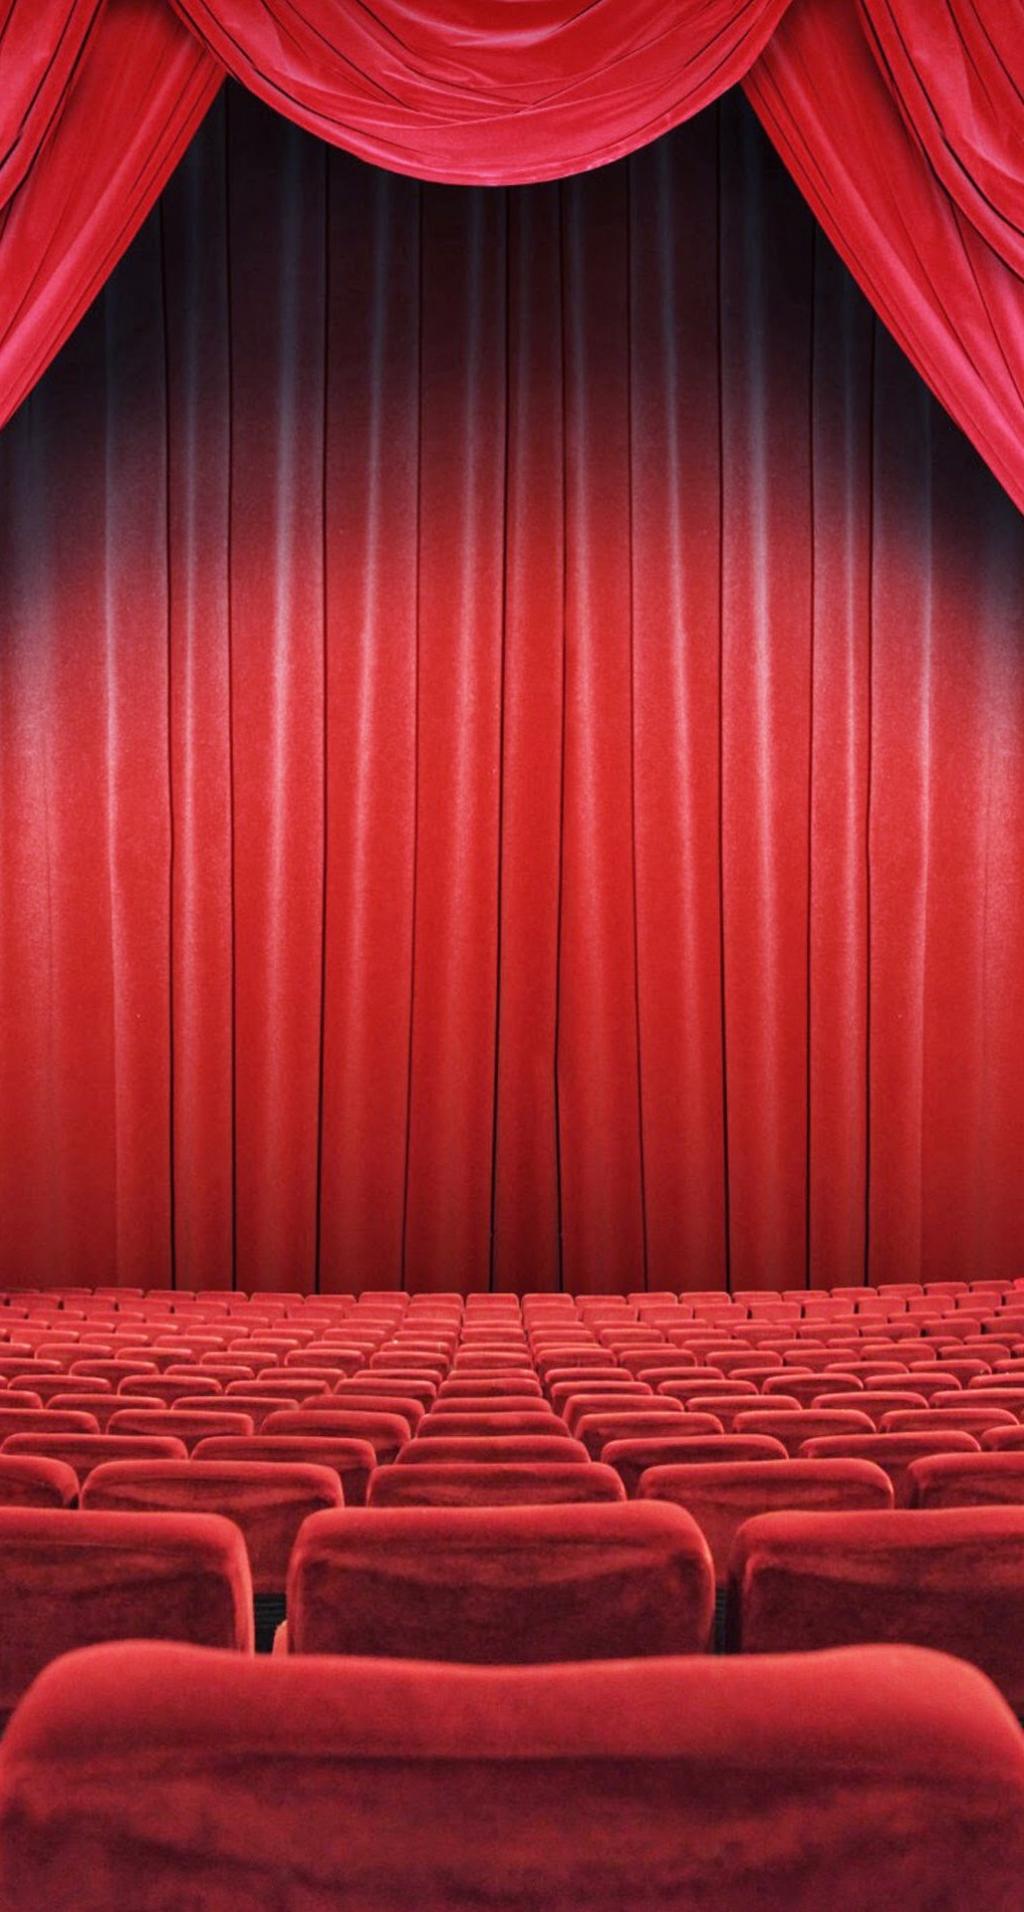 剧院座位红幕iPhone 6 Plus高清壁纸